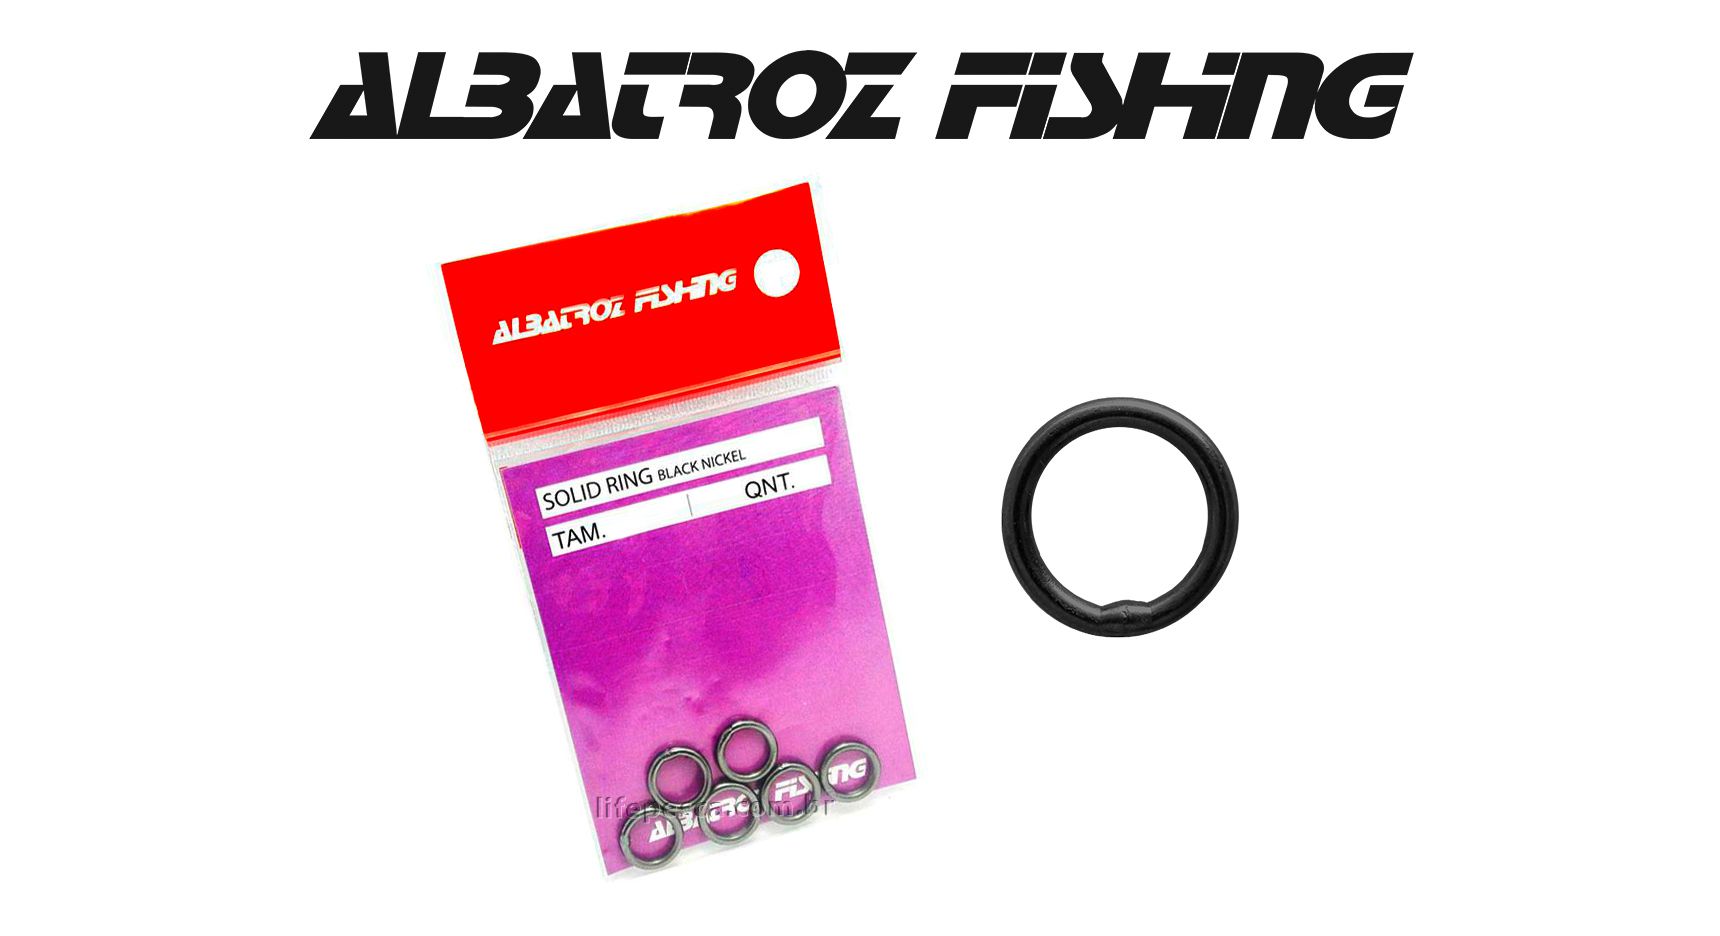 Girador Solid Ring Black Nickel N° 7 - Albatroz Fishing - 6 pçs - Life Pesca - Sua loja de Pesca, Camping e Lazer